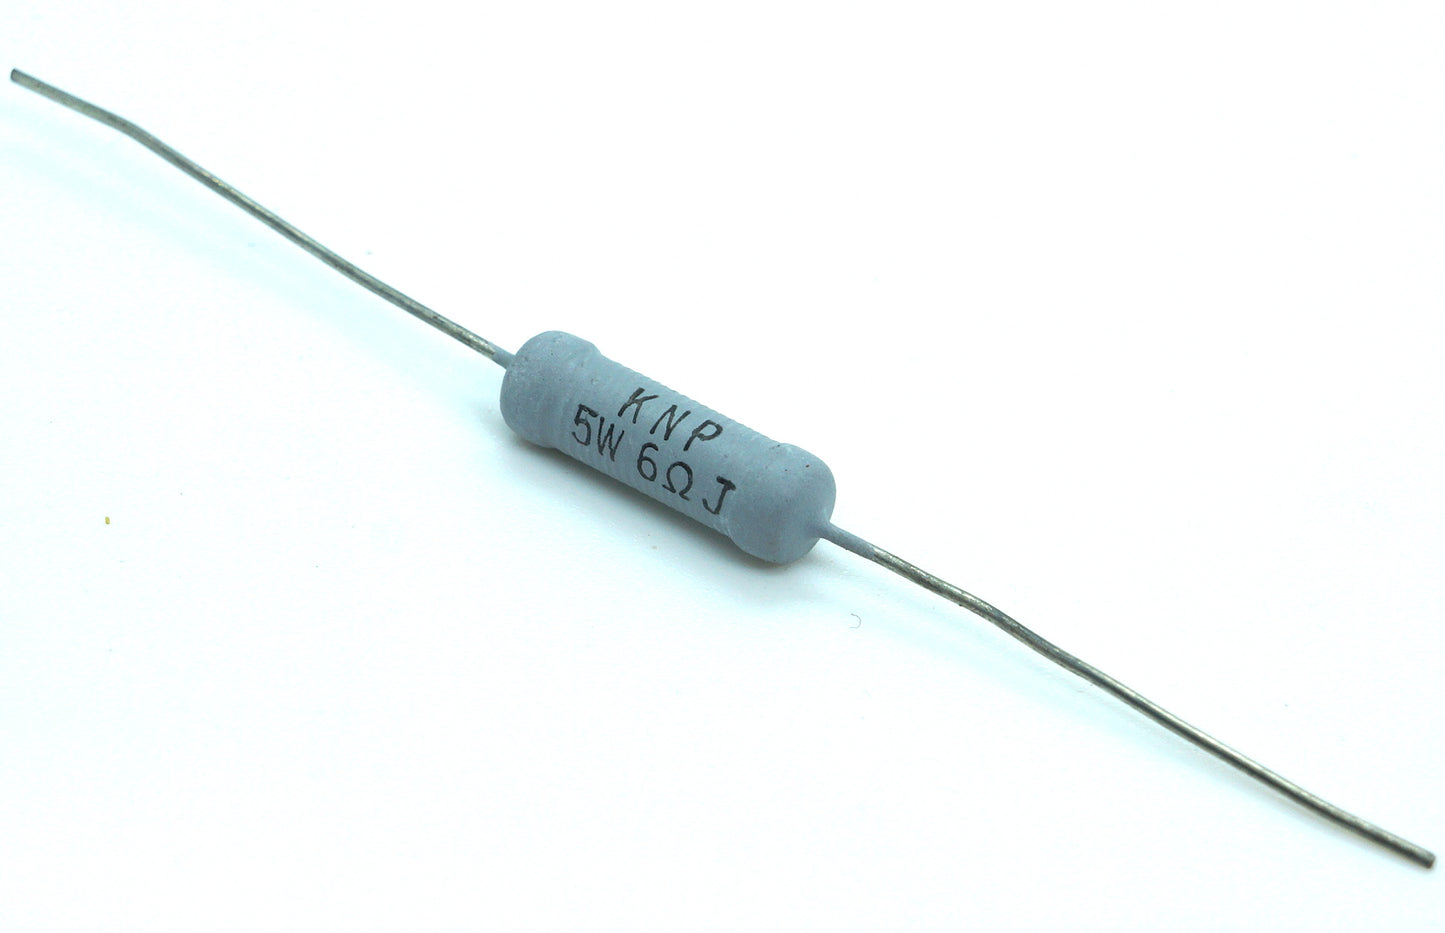 Lot of 10 KNP Wire-Wound Resistors 5 Watt 6 Ohm 5% Tolerance